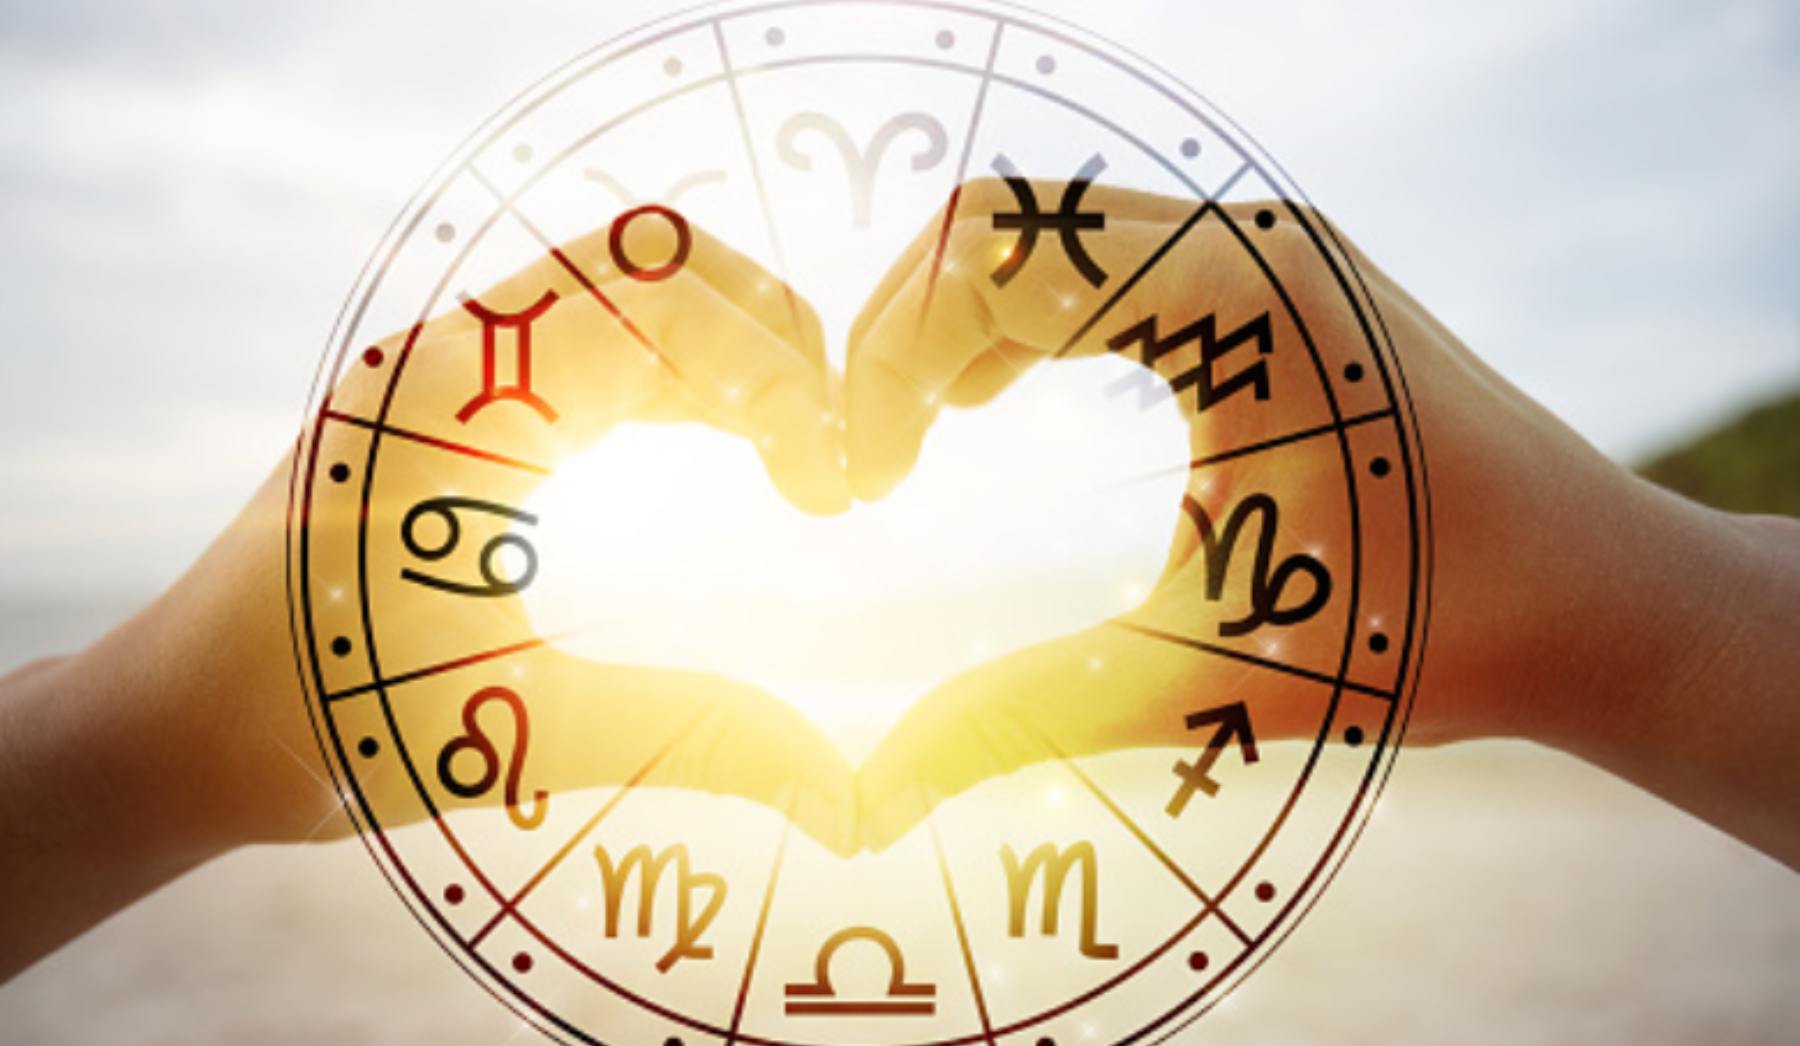 Si tienes ansiedad el Horóscopo puede tener algo que ver: los signos del zodiaco que más la sufren